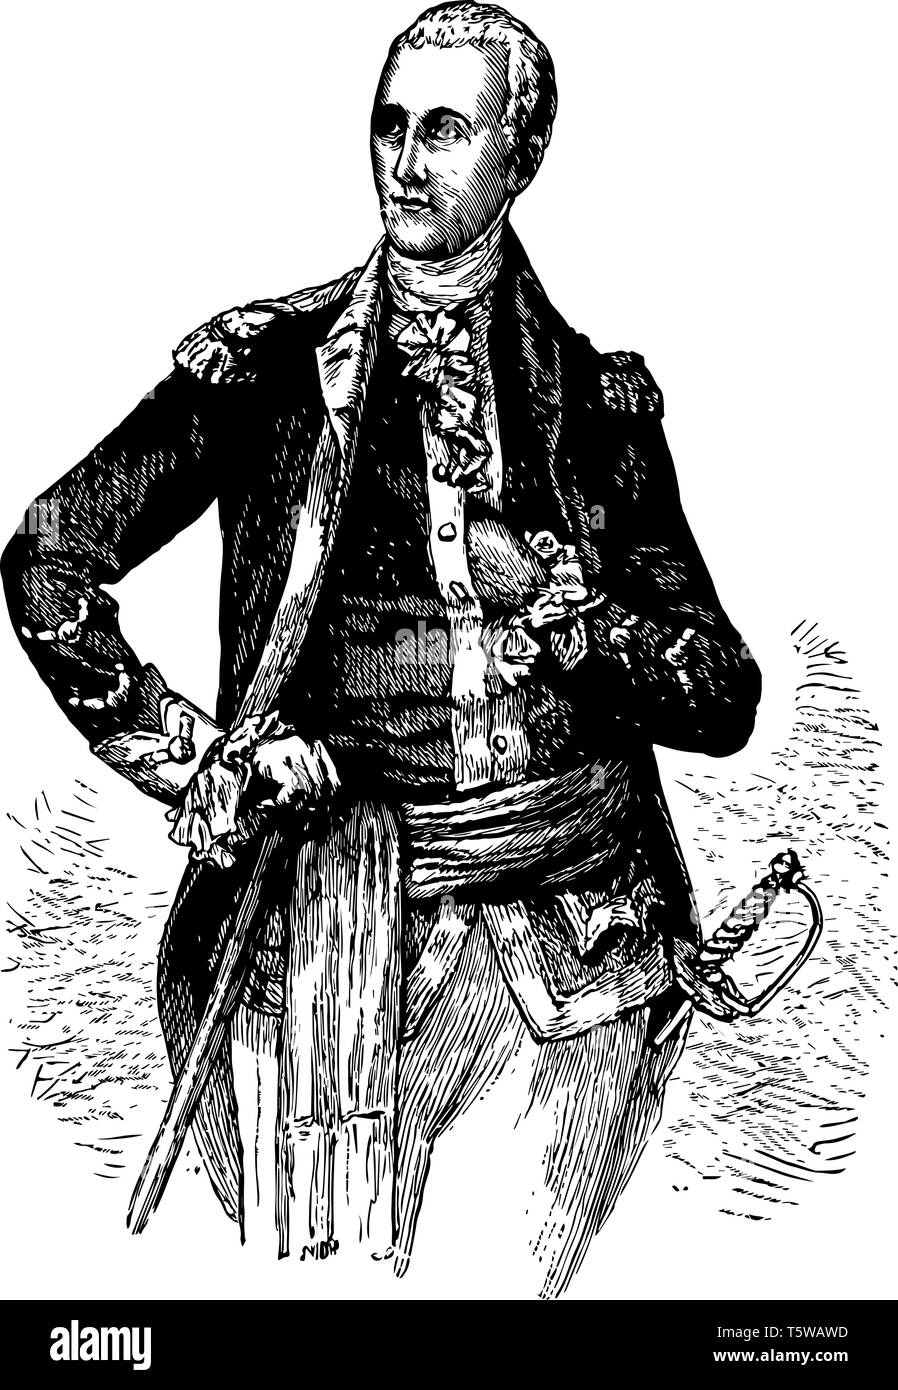 Le Général Lafayette 1757 à 1834, il était un aristocrate français et le général qui ont combattu dans la guerre d'indépendance américaine vintage dessin ou gravure j Illustration de Vecteur